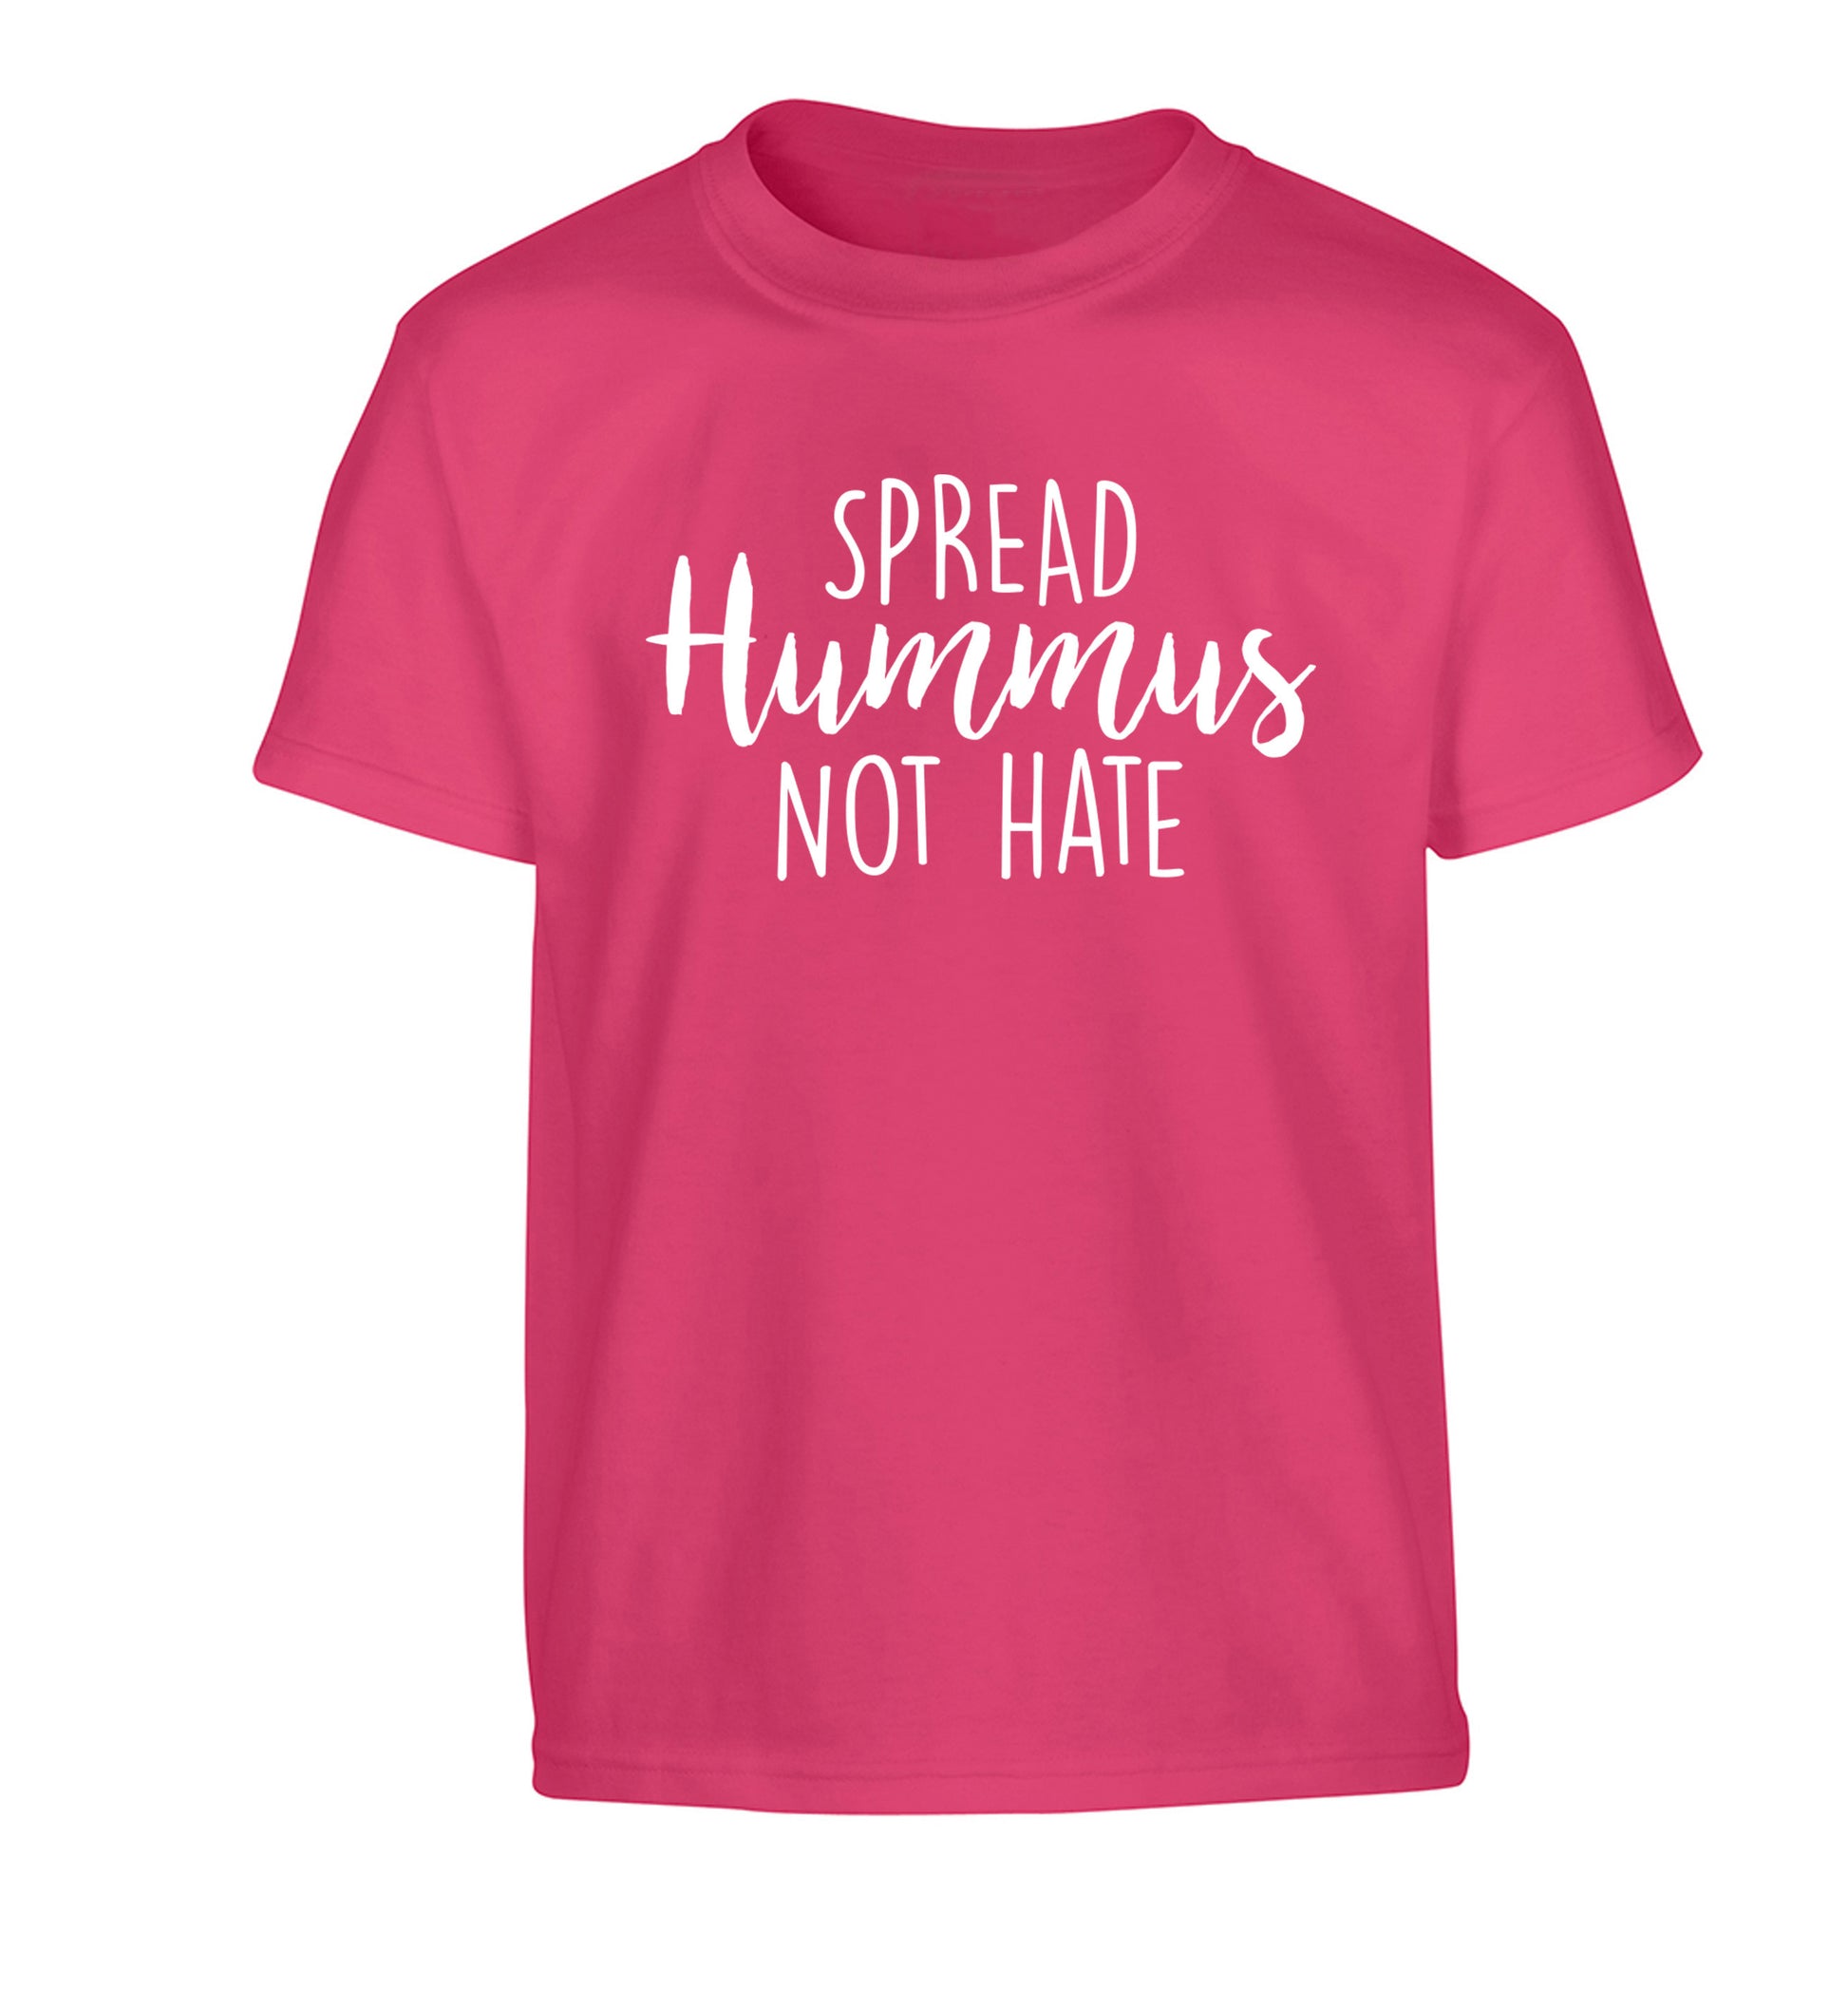 Spread hummus not hate script text Children's pink Tshirt 12-14 Years